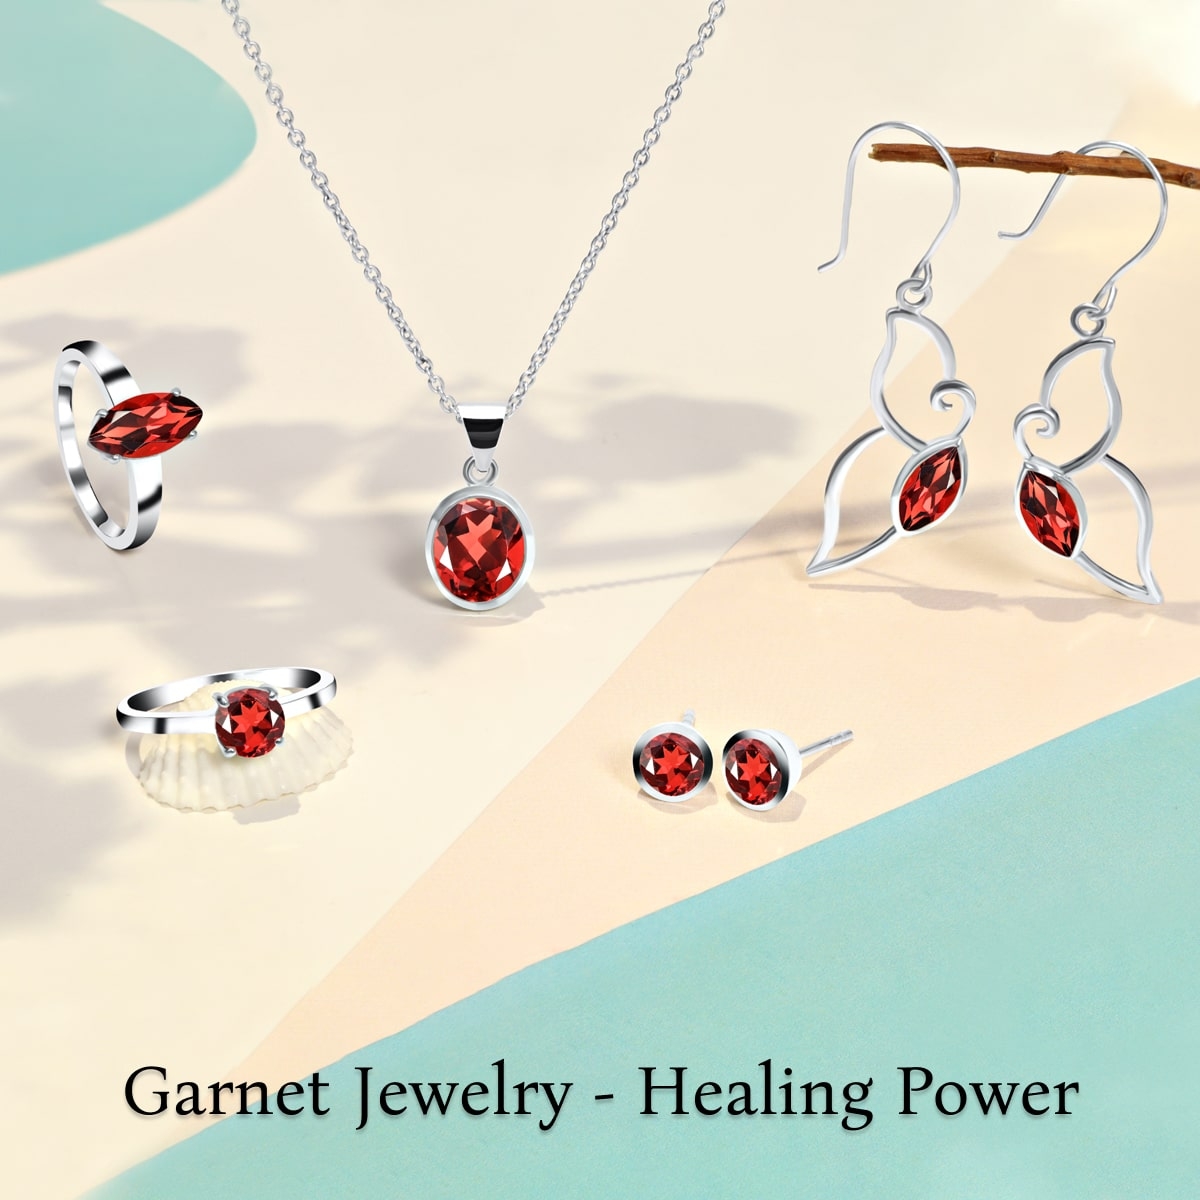 Heal Yourself by Wearing Garnet Jewelry